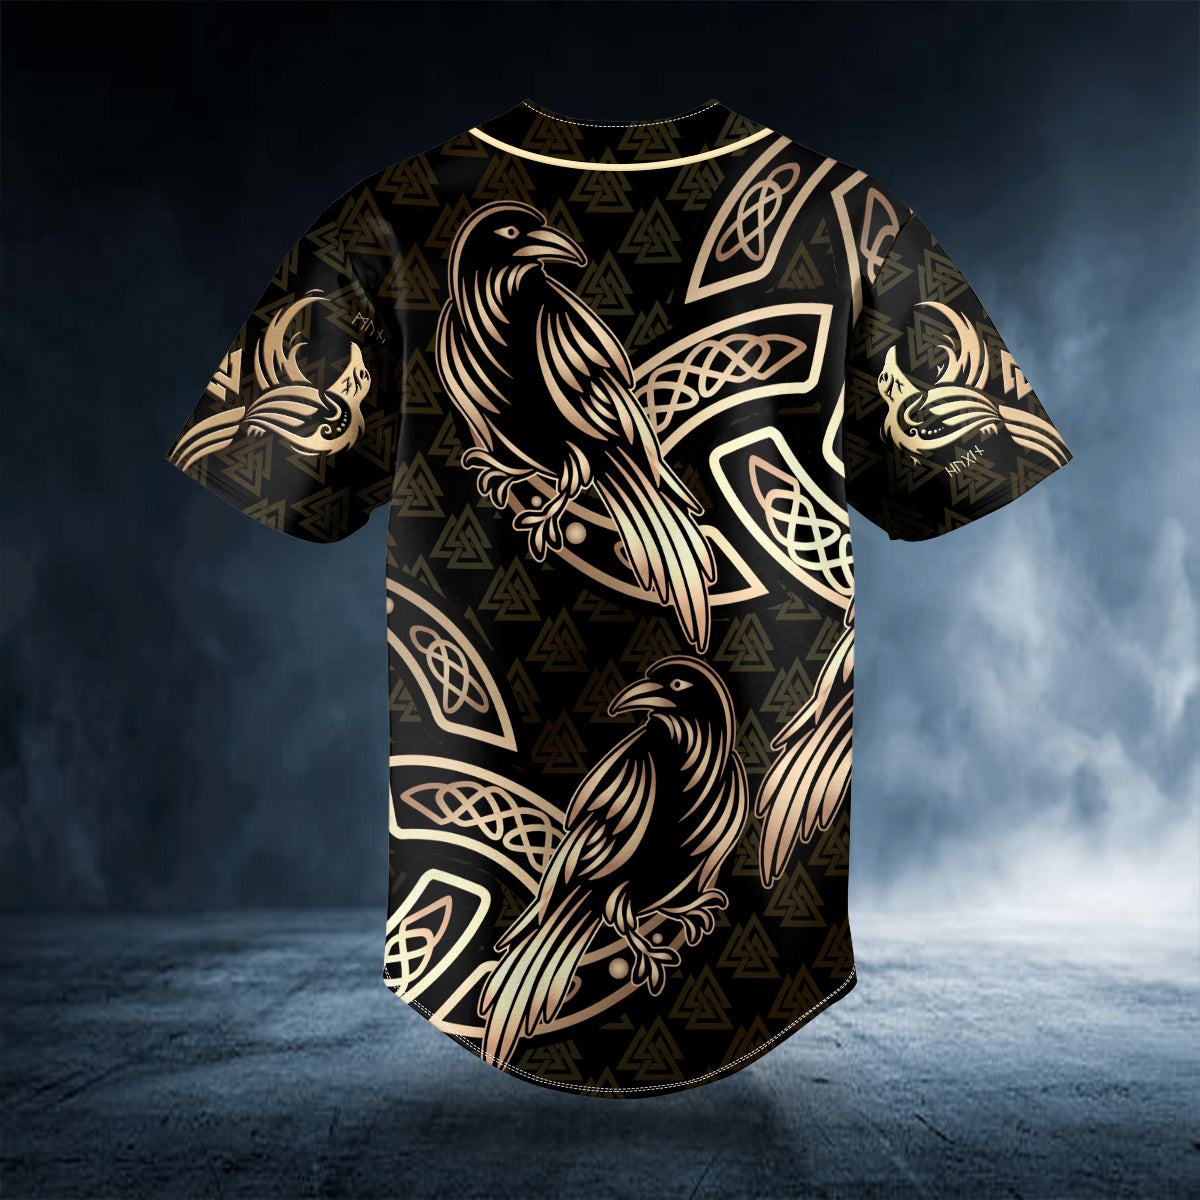 gold raven viking tattoo custom baseball jersey bsj 985 sqmlt